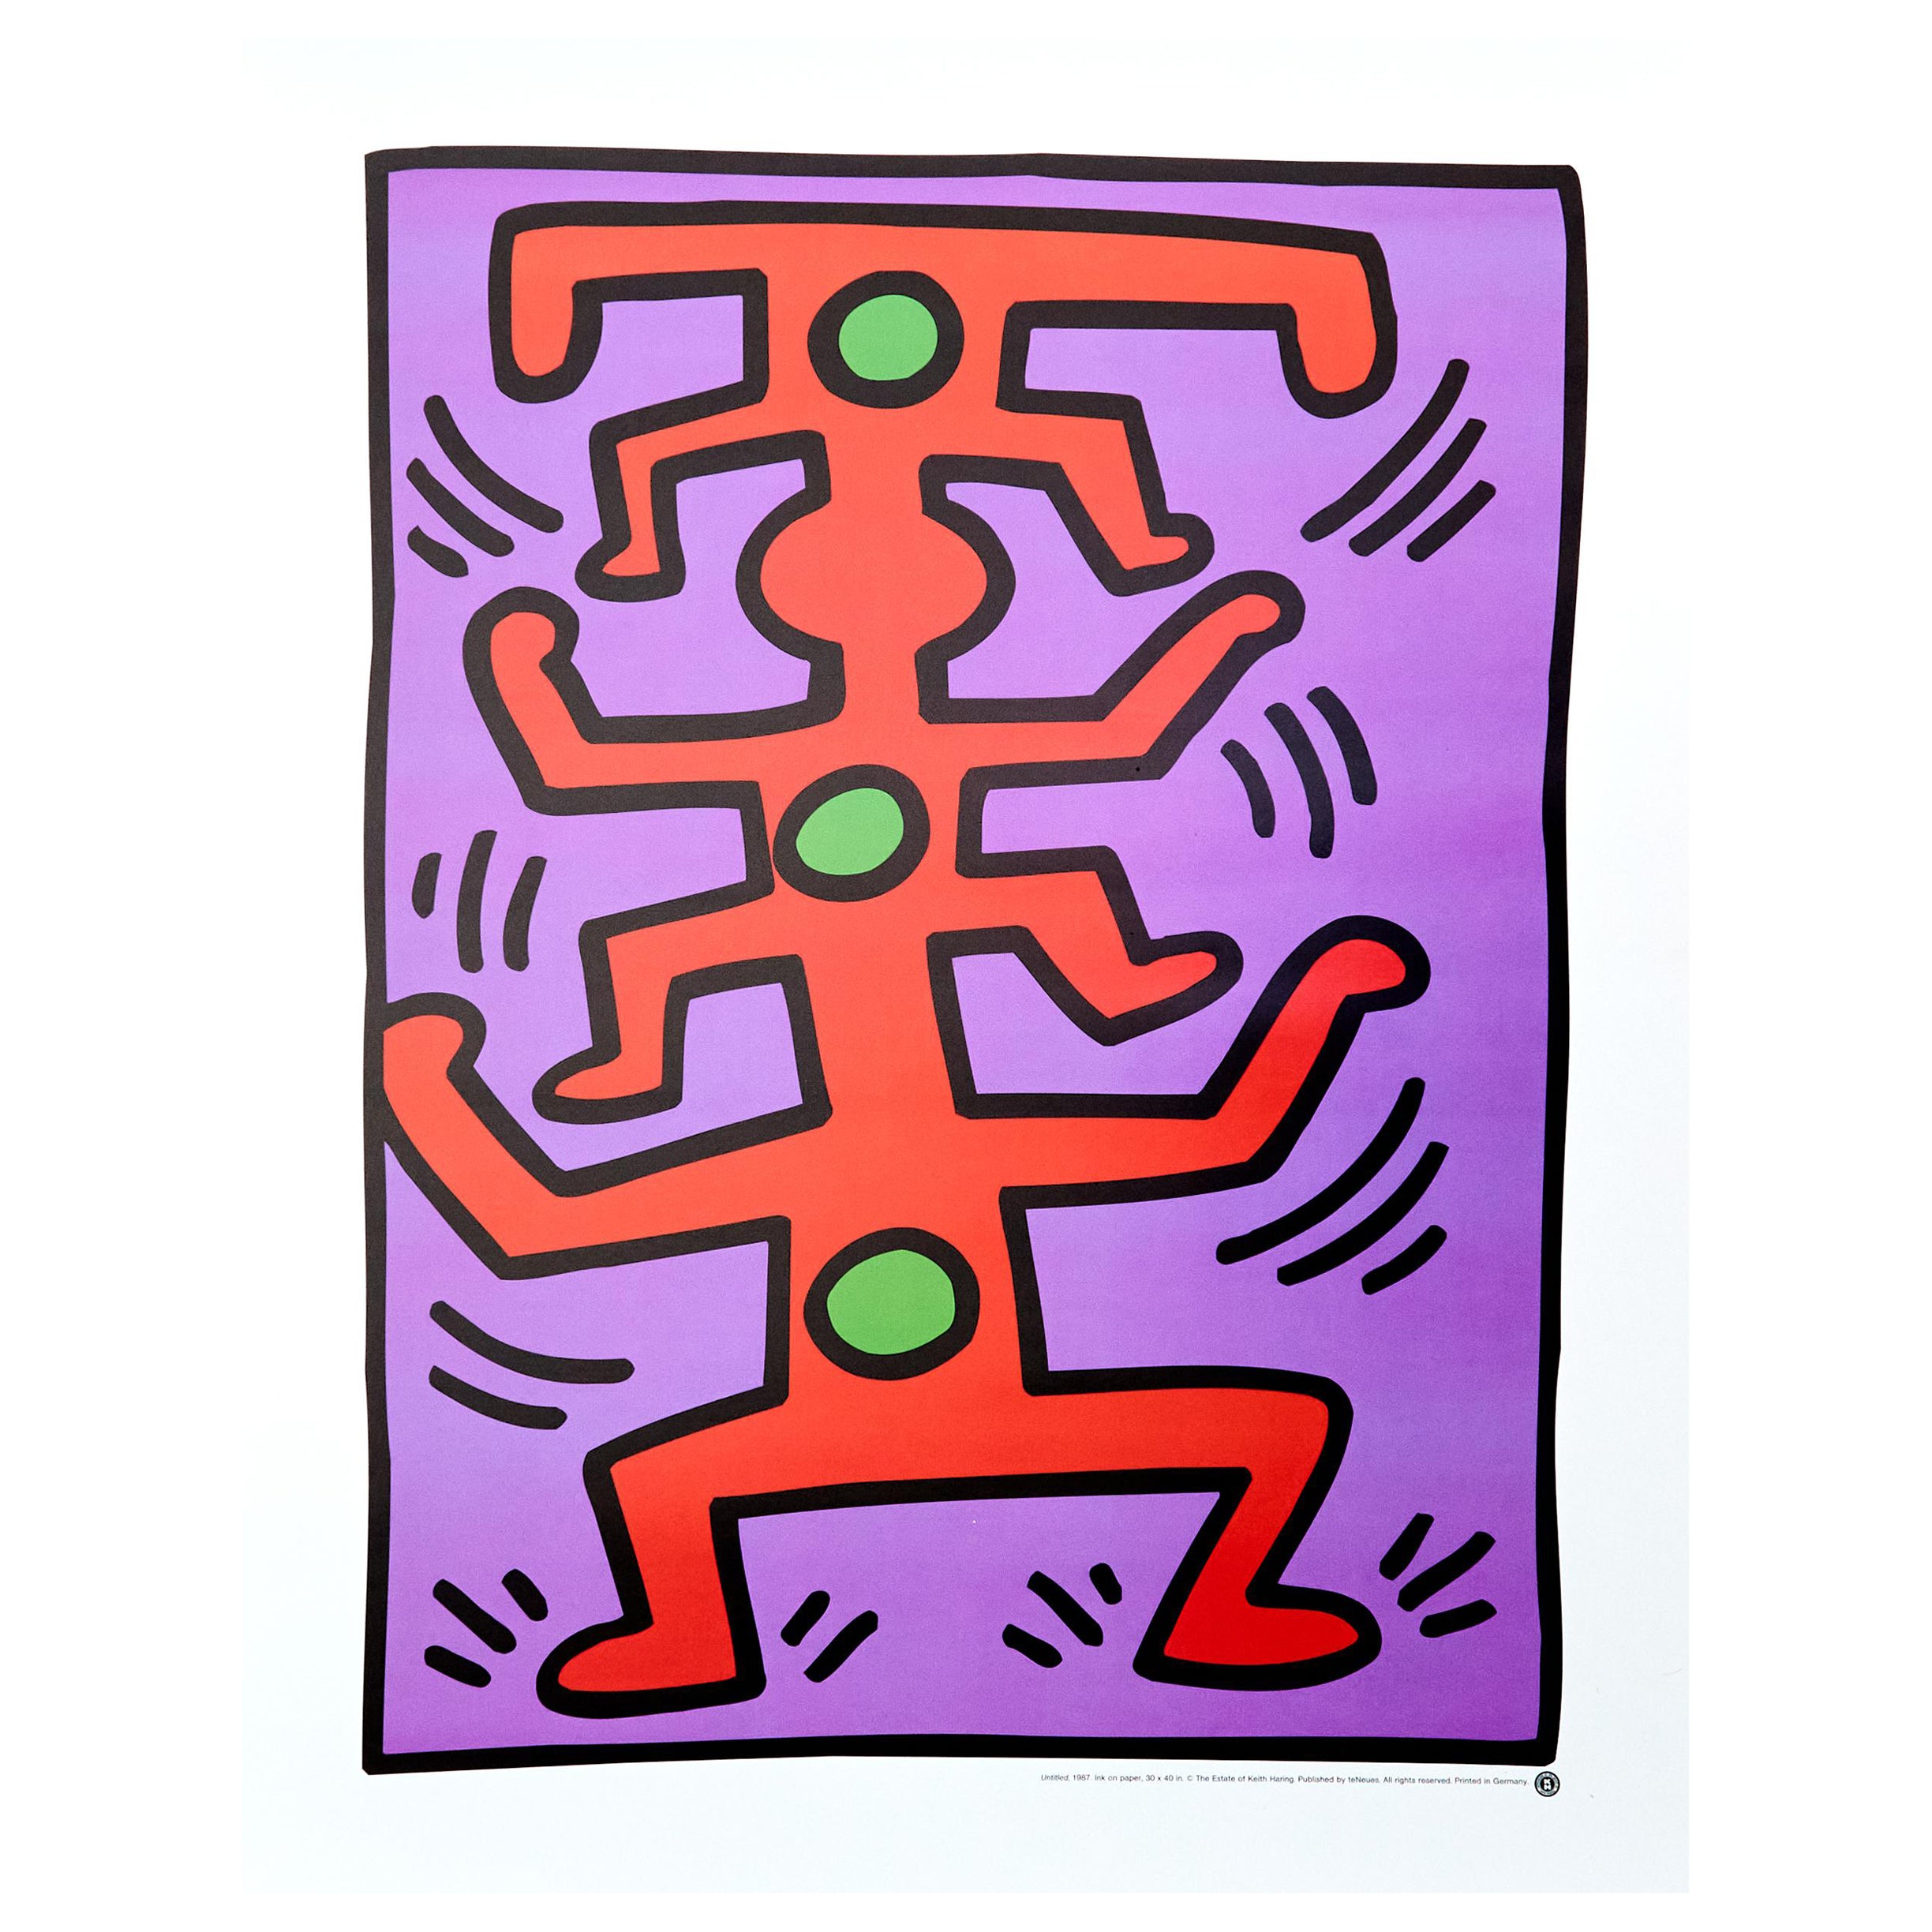 Lithographie von Keith Haring, 1987, von teNeues